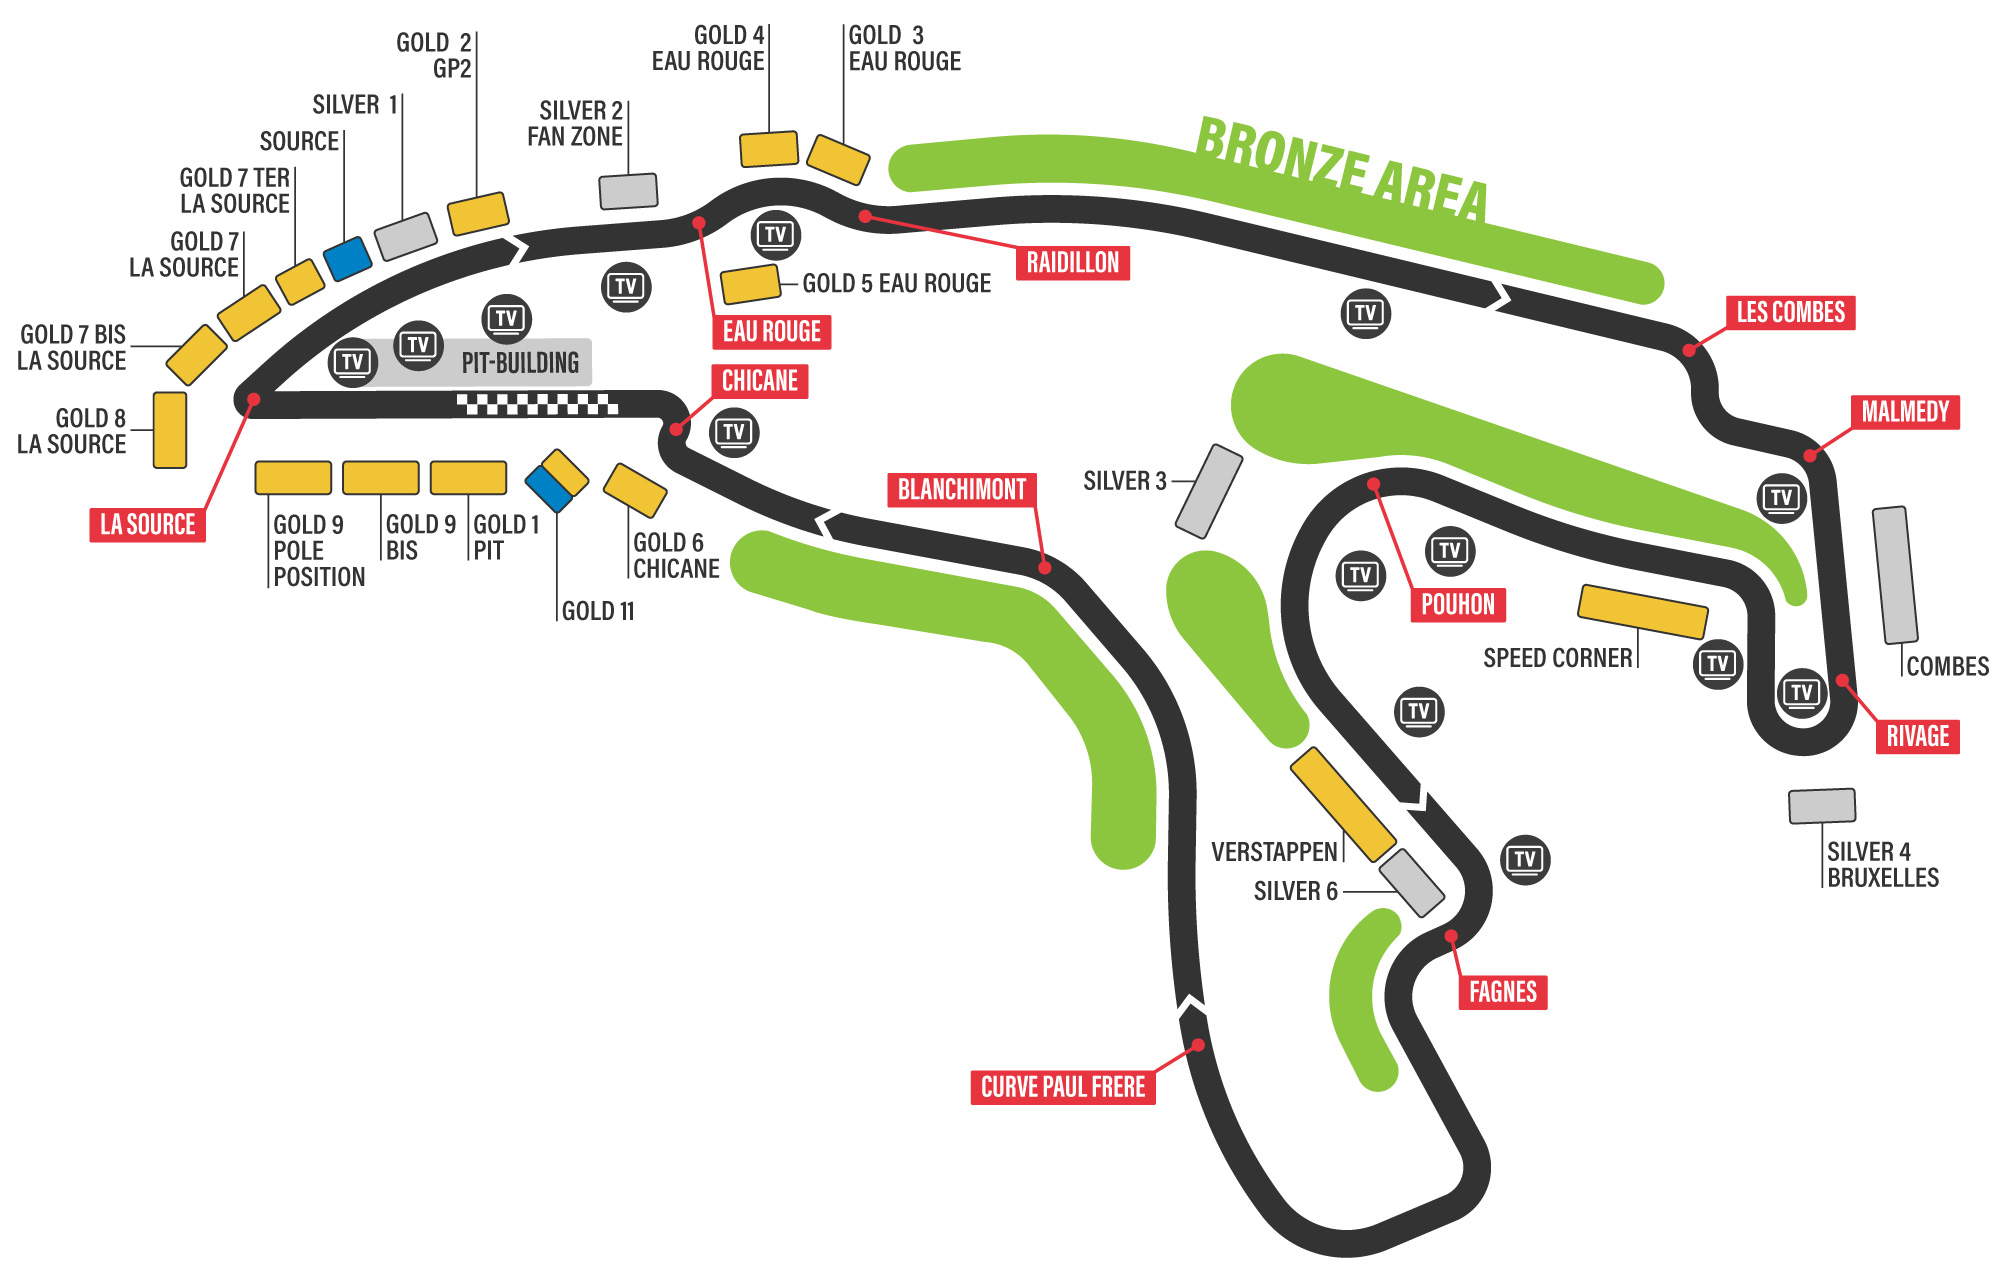 Circuitkaart Spa-Francorchamps | F1 Grand Prix van Spa 2024 | België | Officiële tickets | F1Spa.com